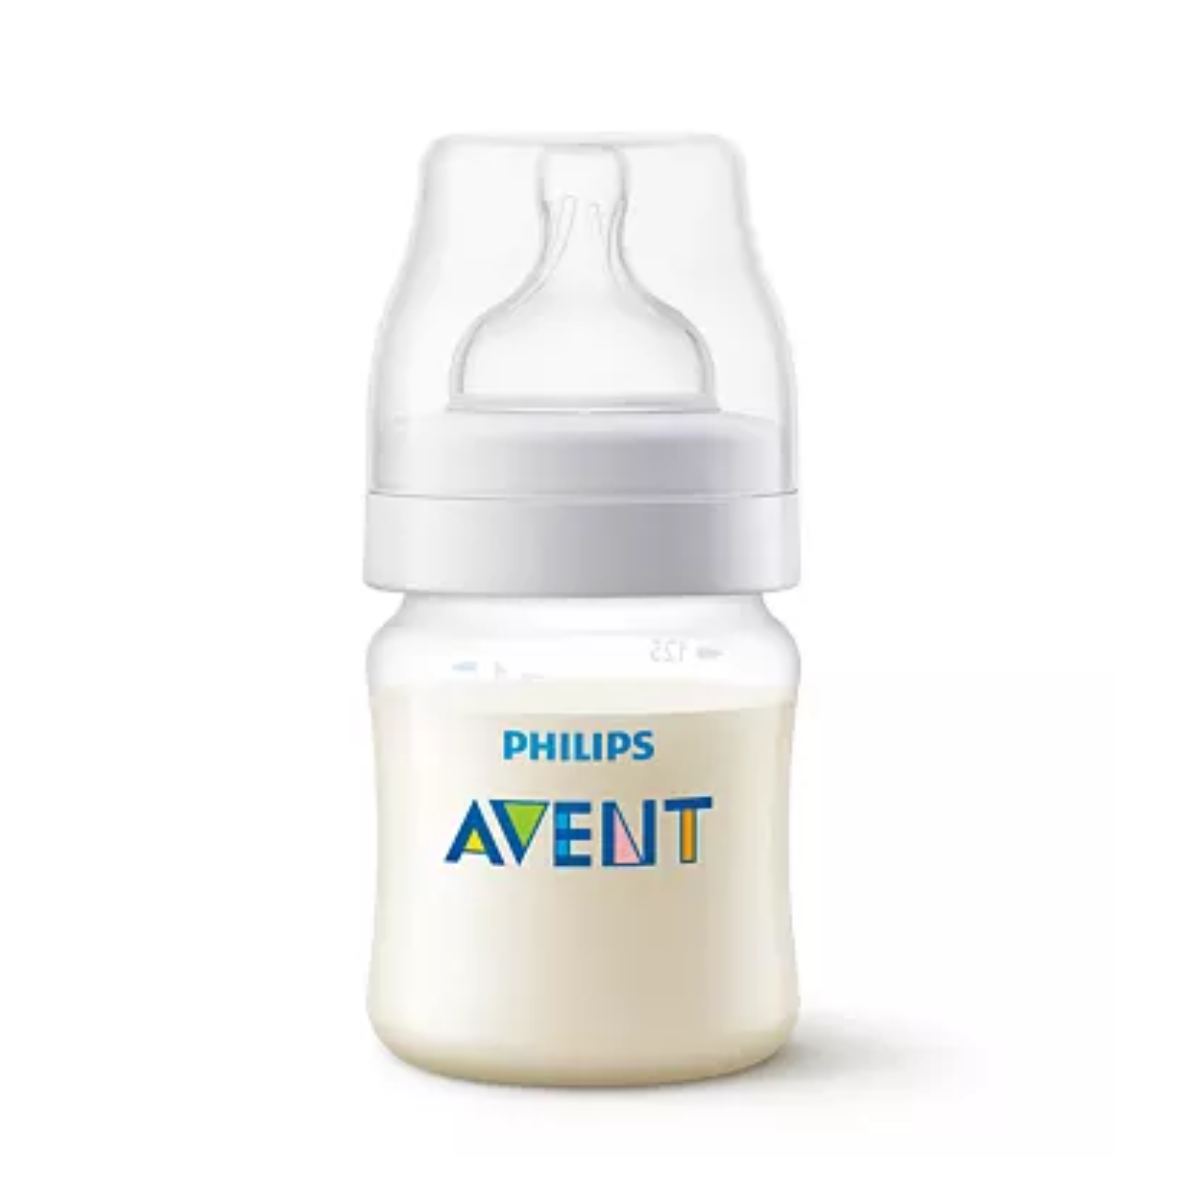 [GIFT] Bình Sữa Philips Avent (shrink wrap) dung tích 125ml/260ml, được chứng minh lâm sàng giúp giảm đầy hơi và quấy khóc